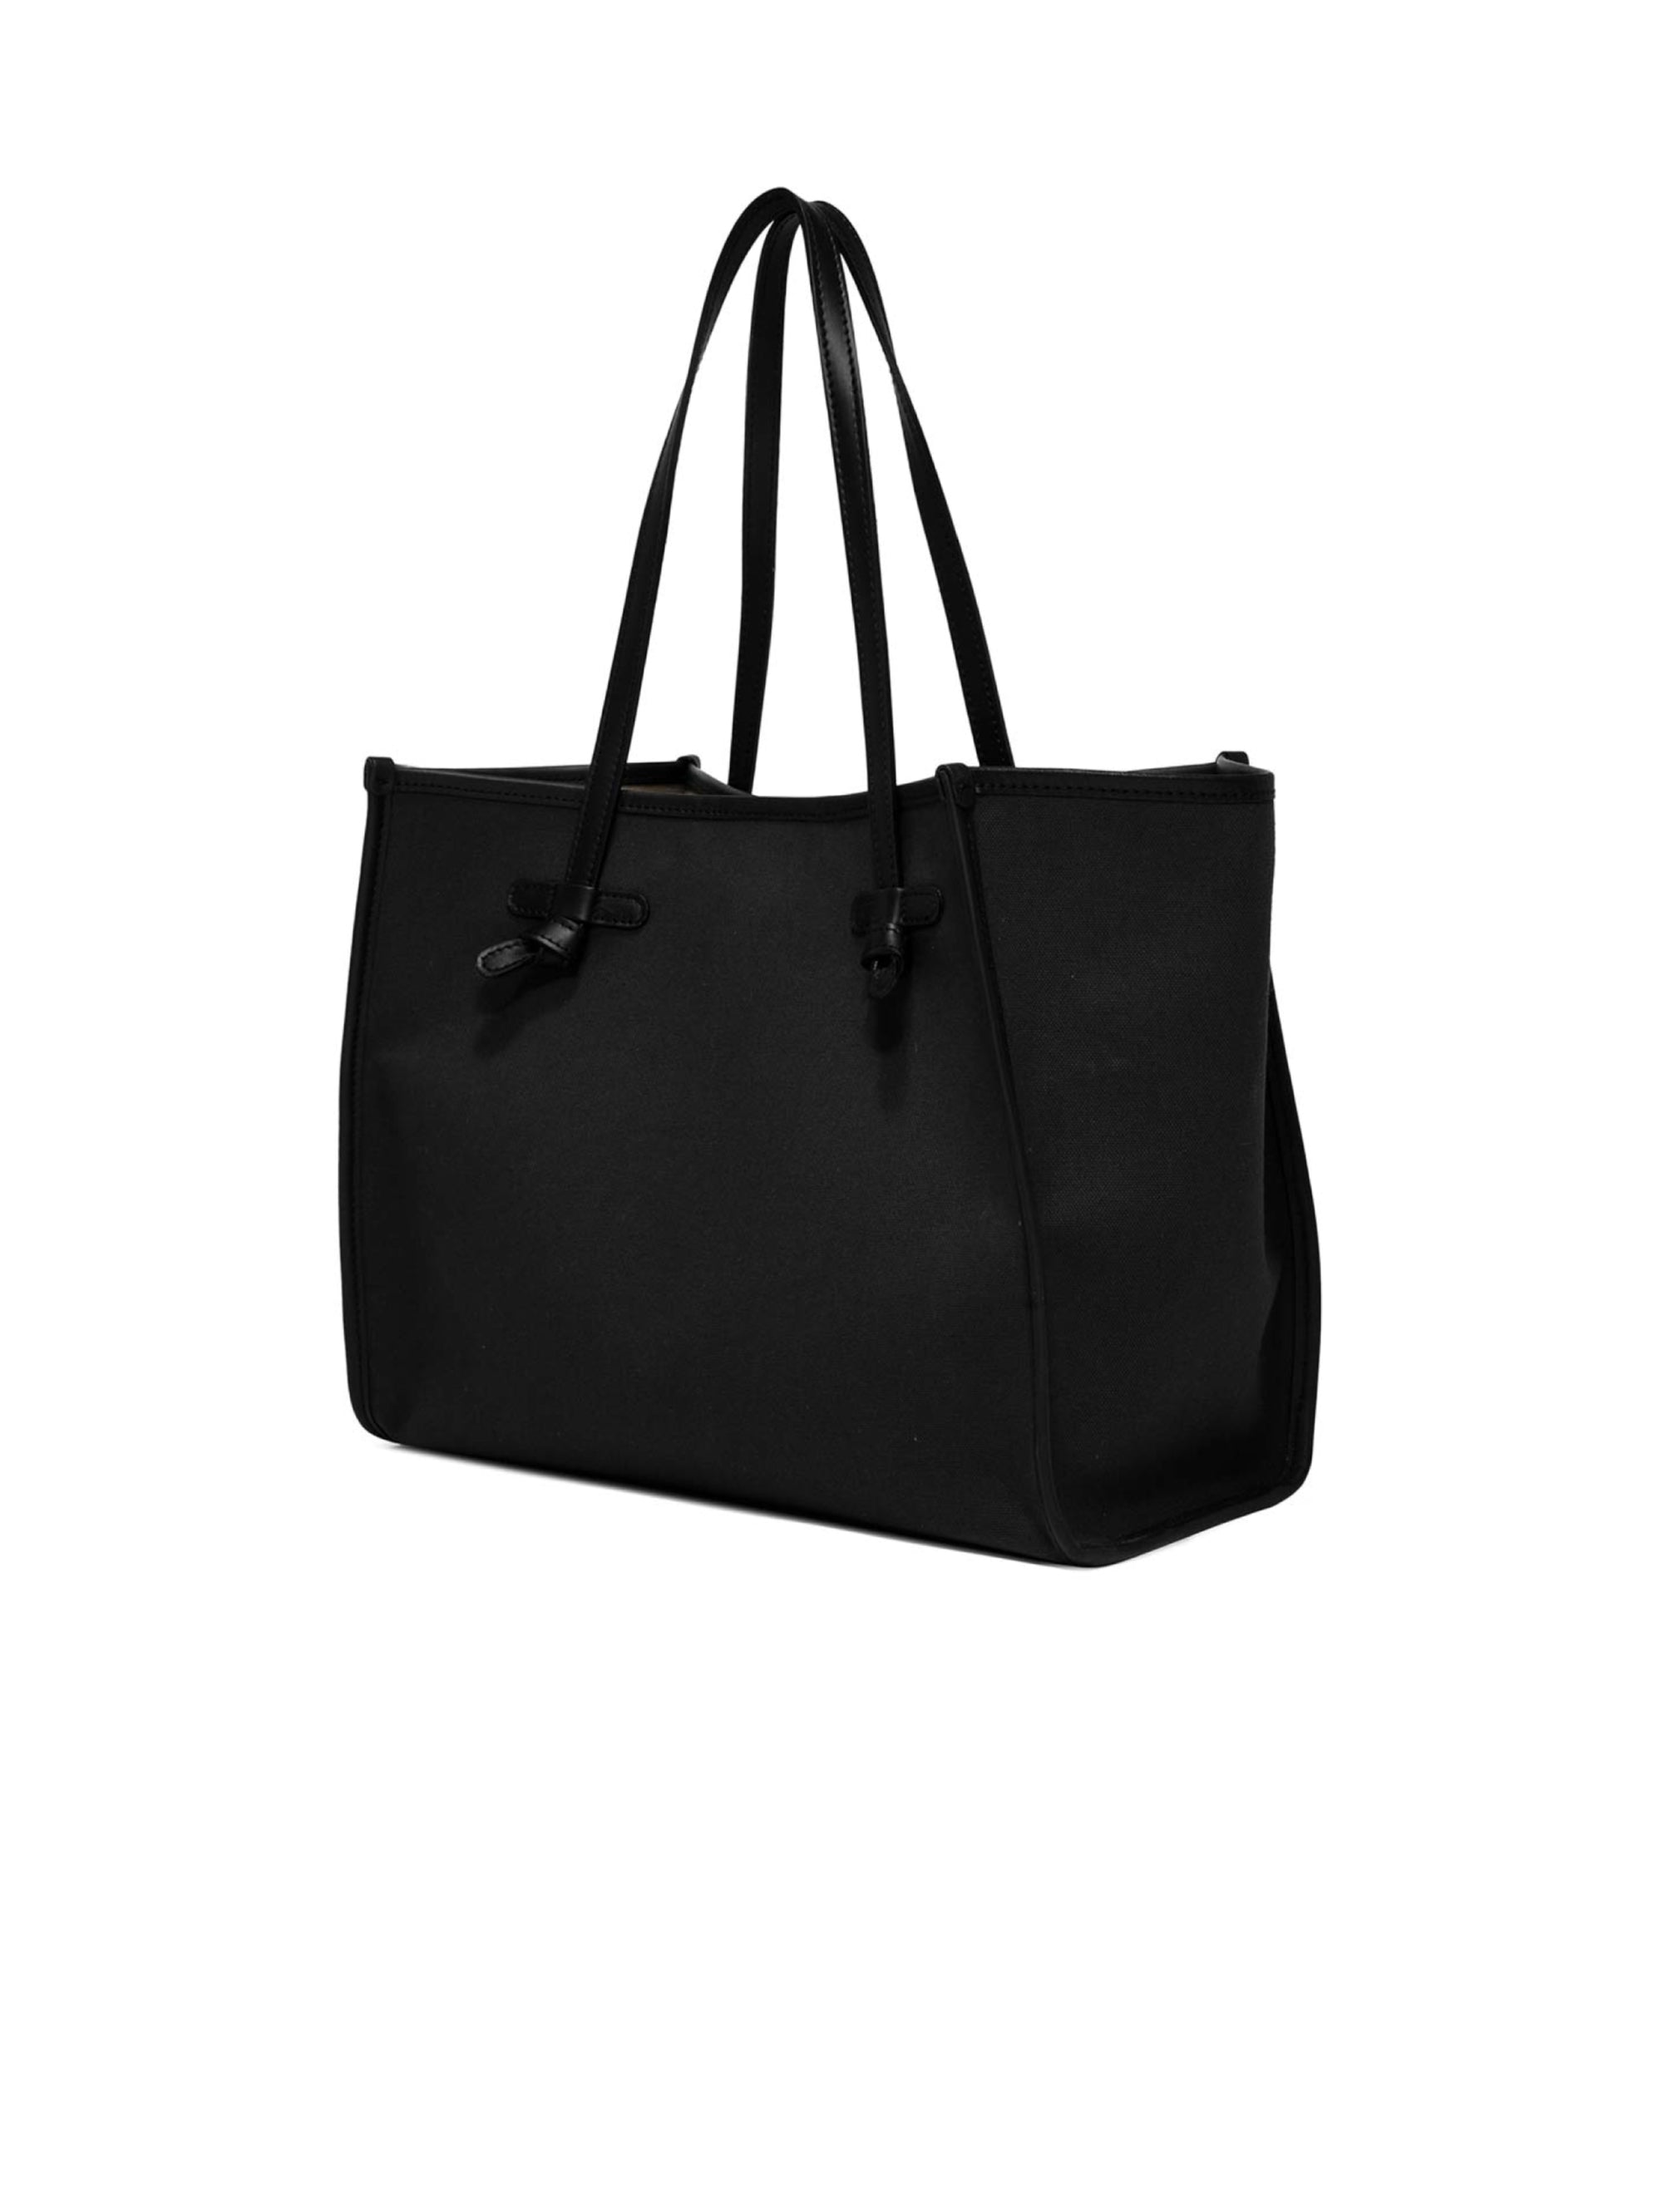 Shoulder Bag in Black/Rope Marcella Fabric